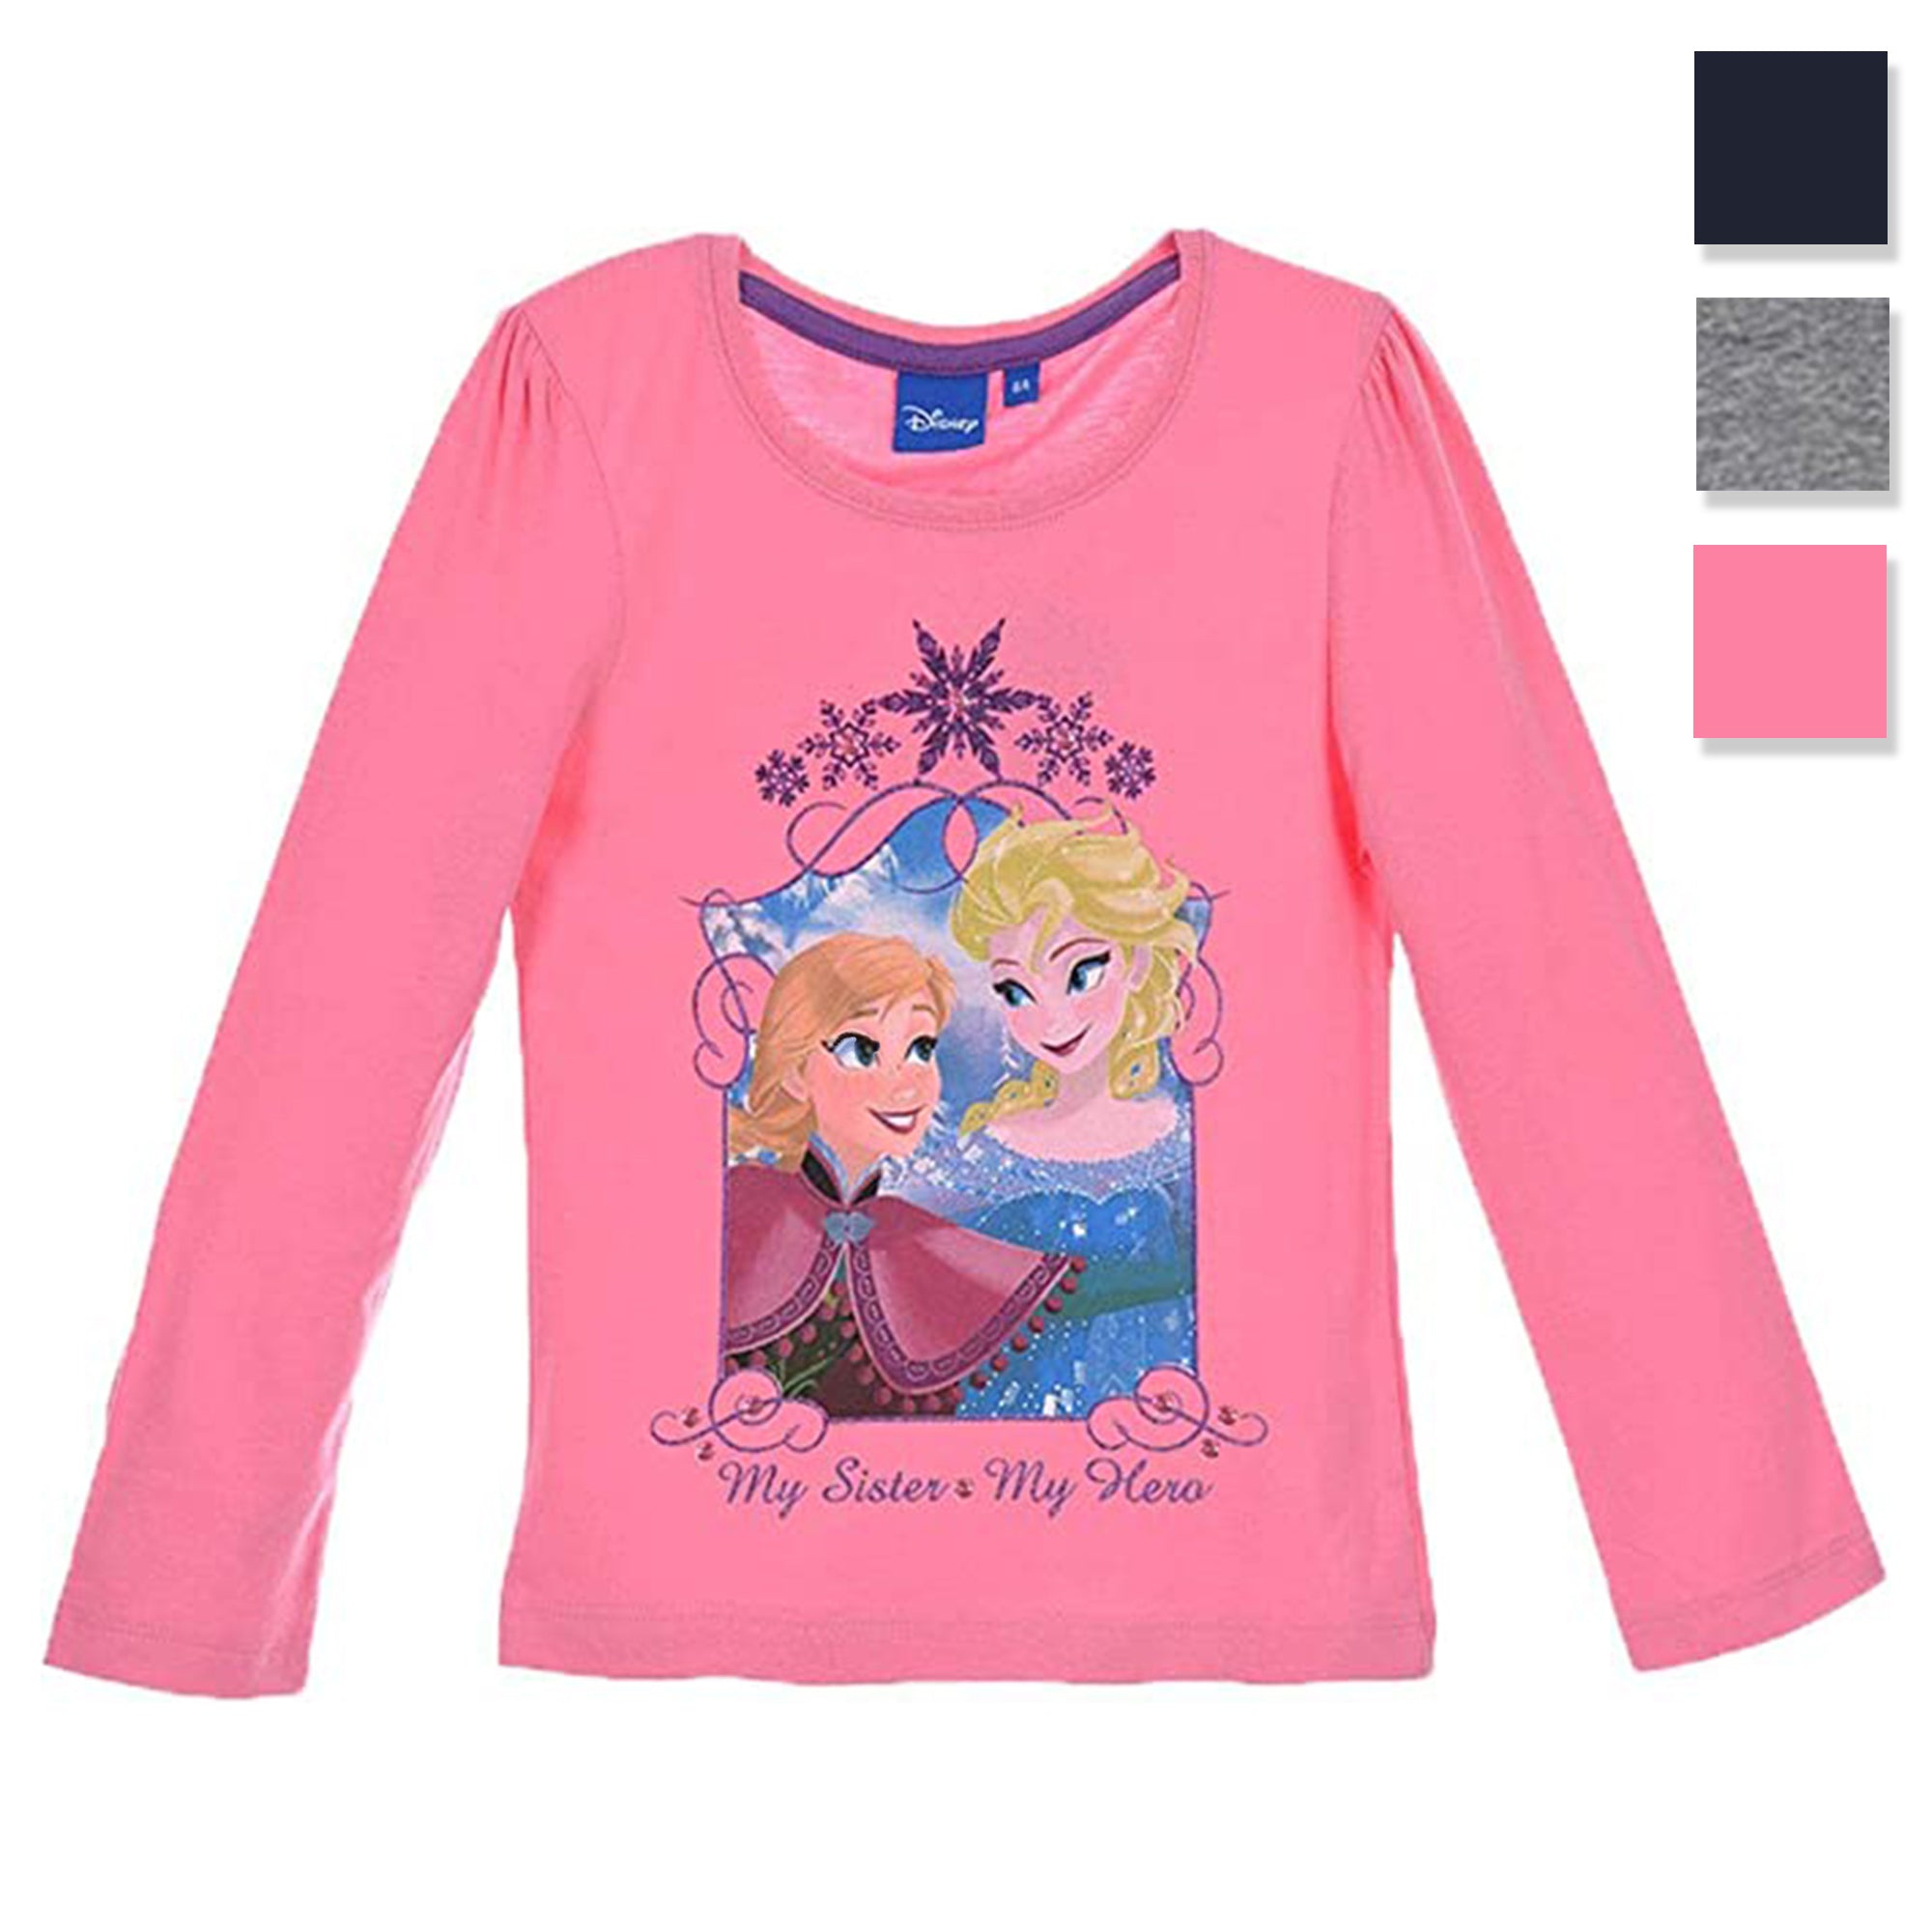 Maglietta maniche lunghe bambina ufficiale Disney Frozen Elsa originale 3298